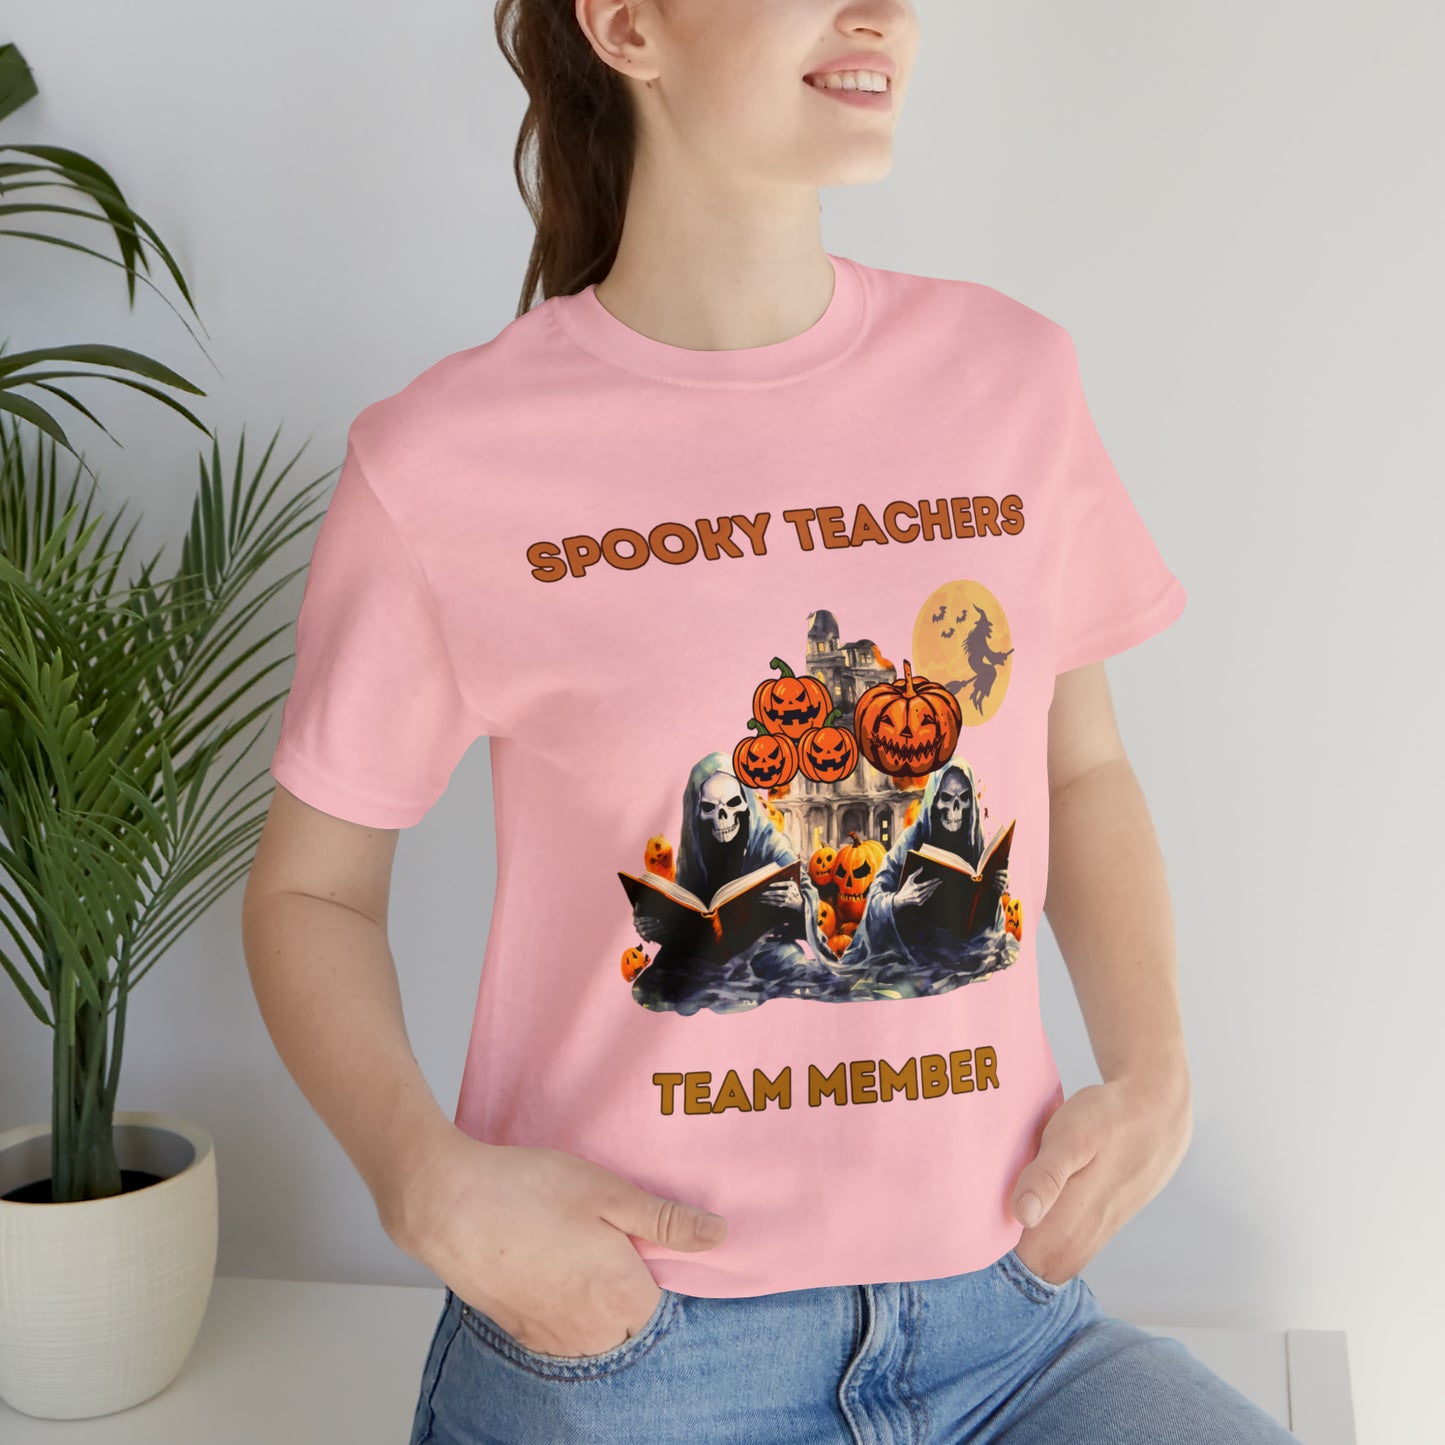 Spooky Teachers Team Member Unisex T-Shirt T-Shirt Pink S 